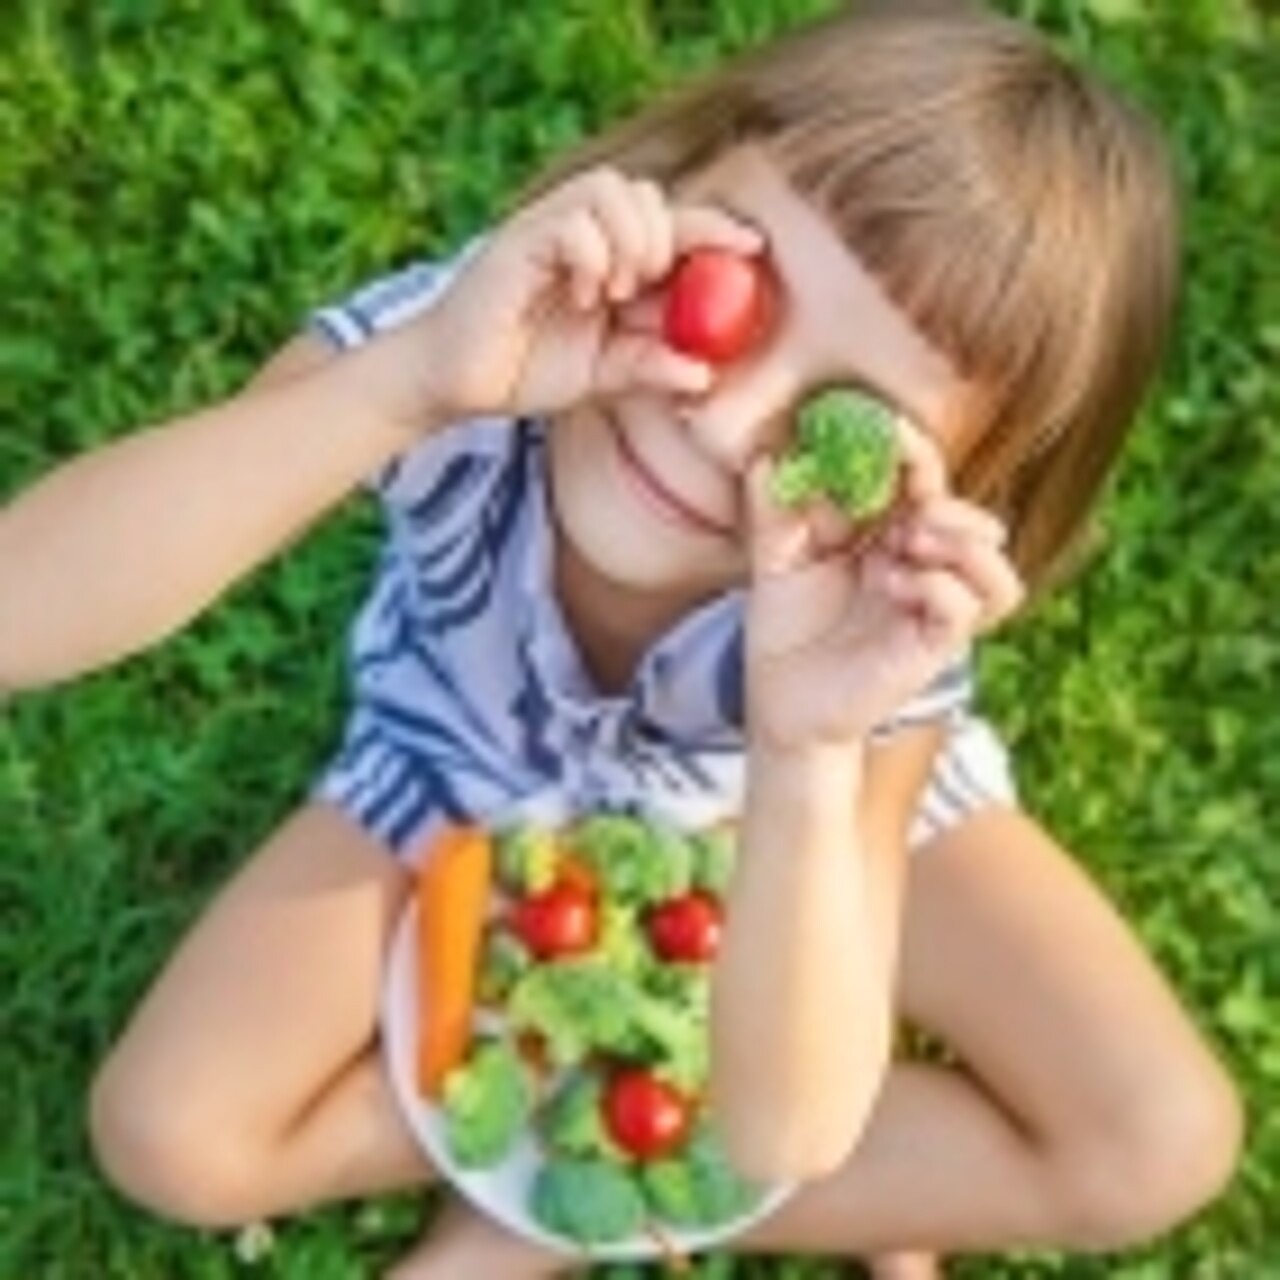 Ein Kind hält sich eine Tomate und ein Stück Brokkoli vor die Augen.